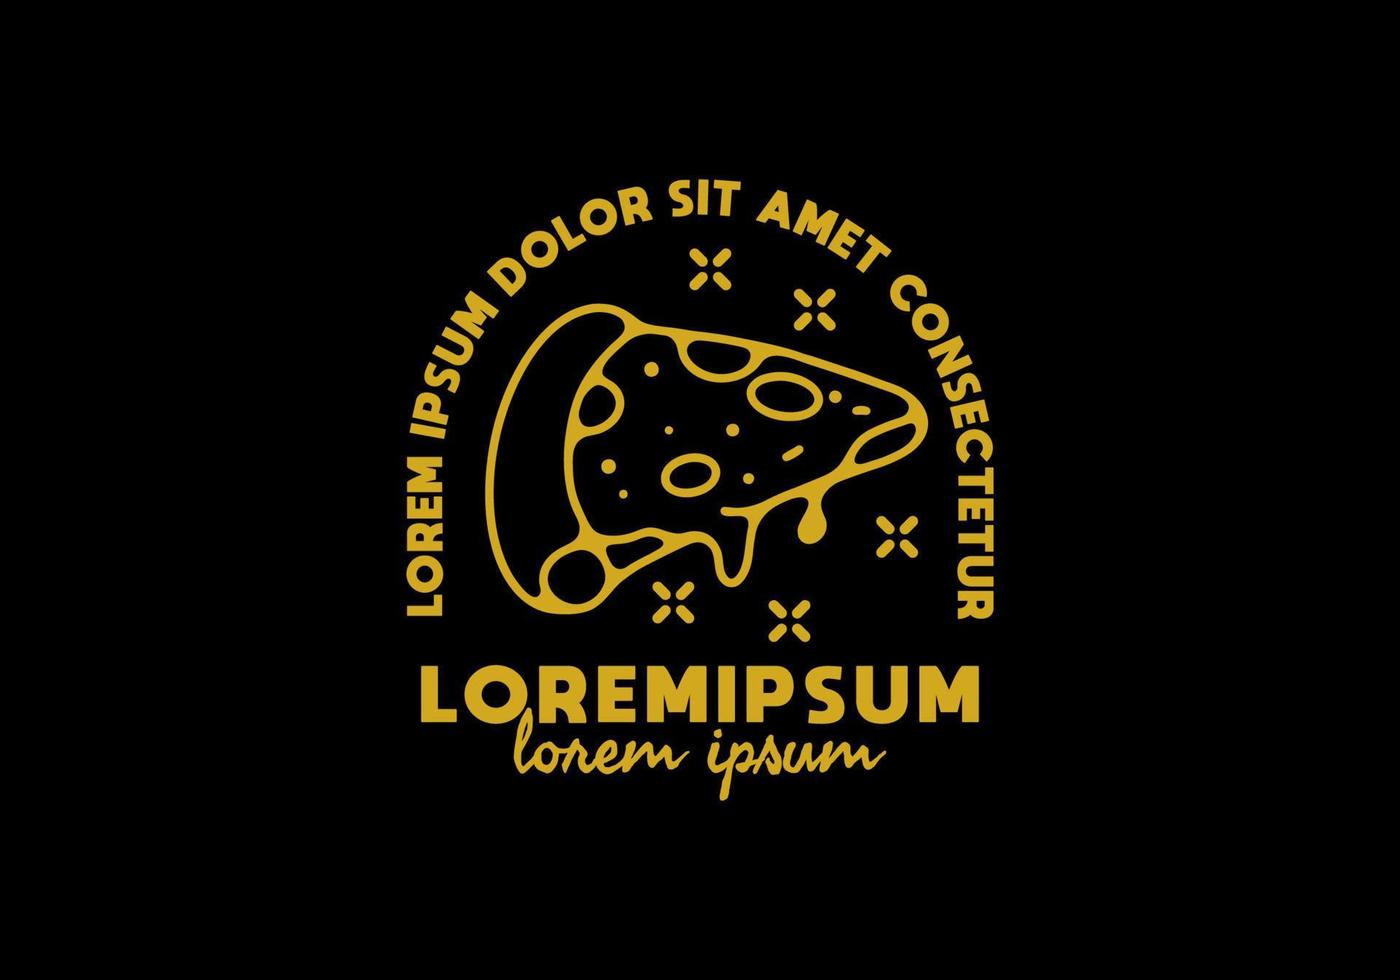 lijntekeningen illustratie van pizza met lorem ipsum tekst vector